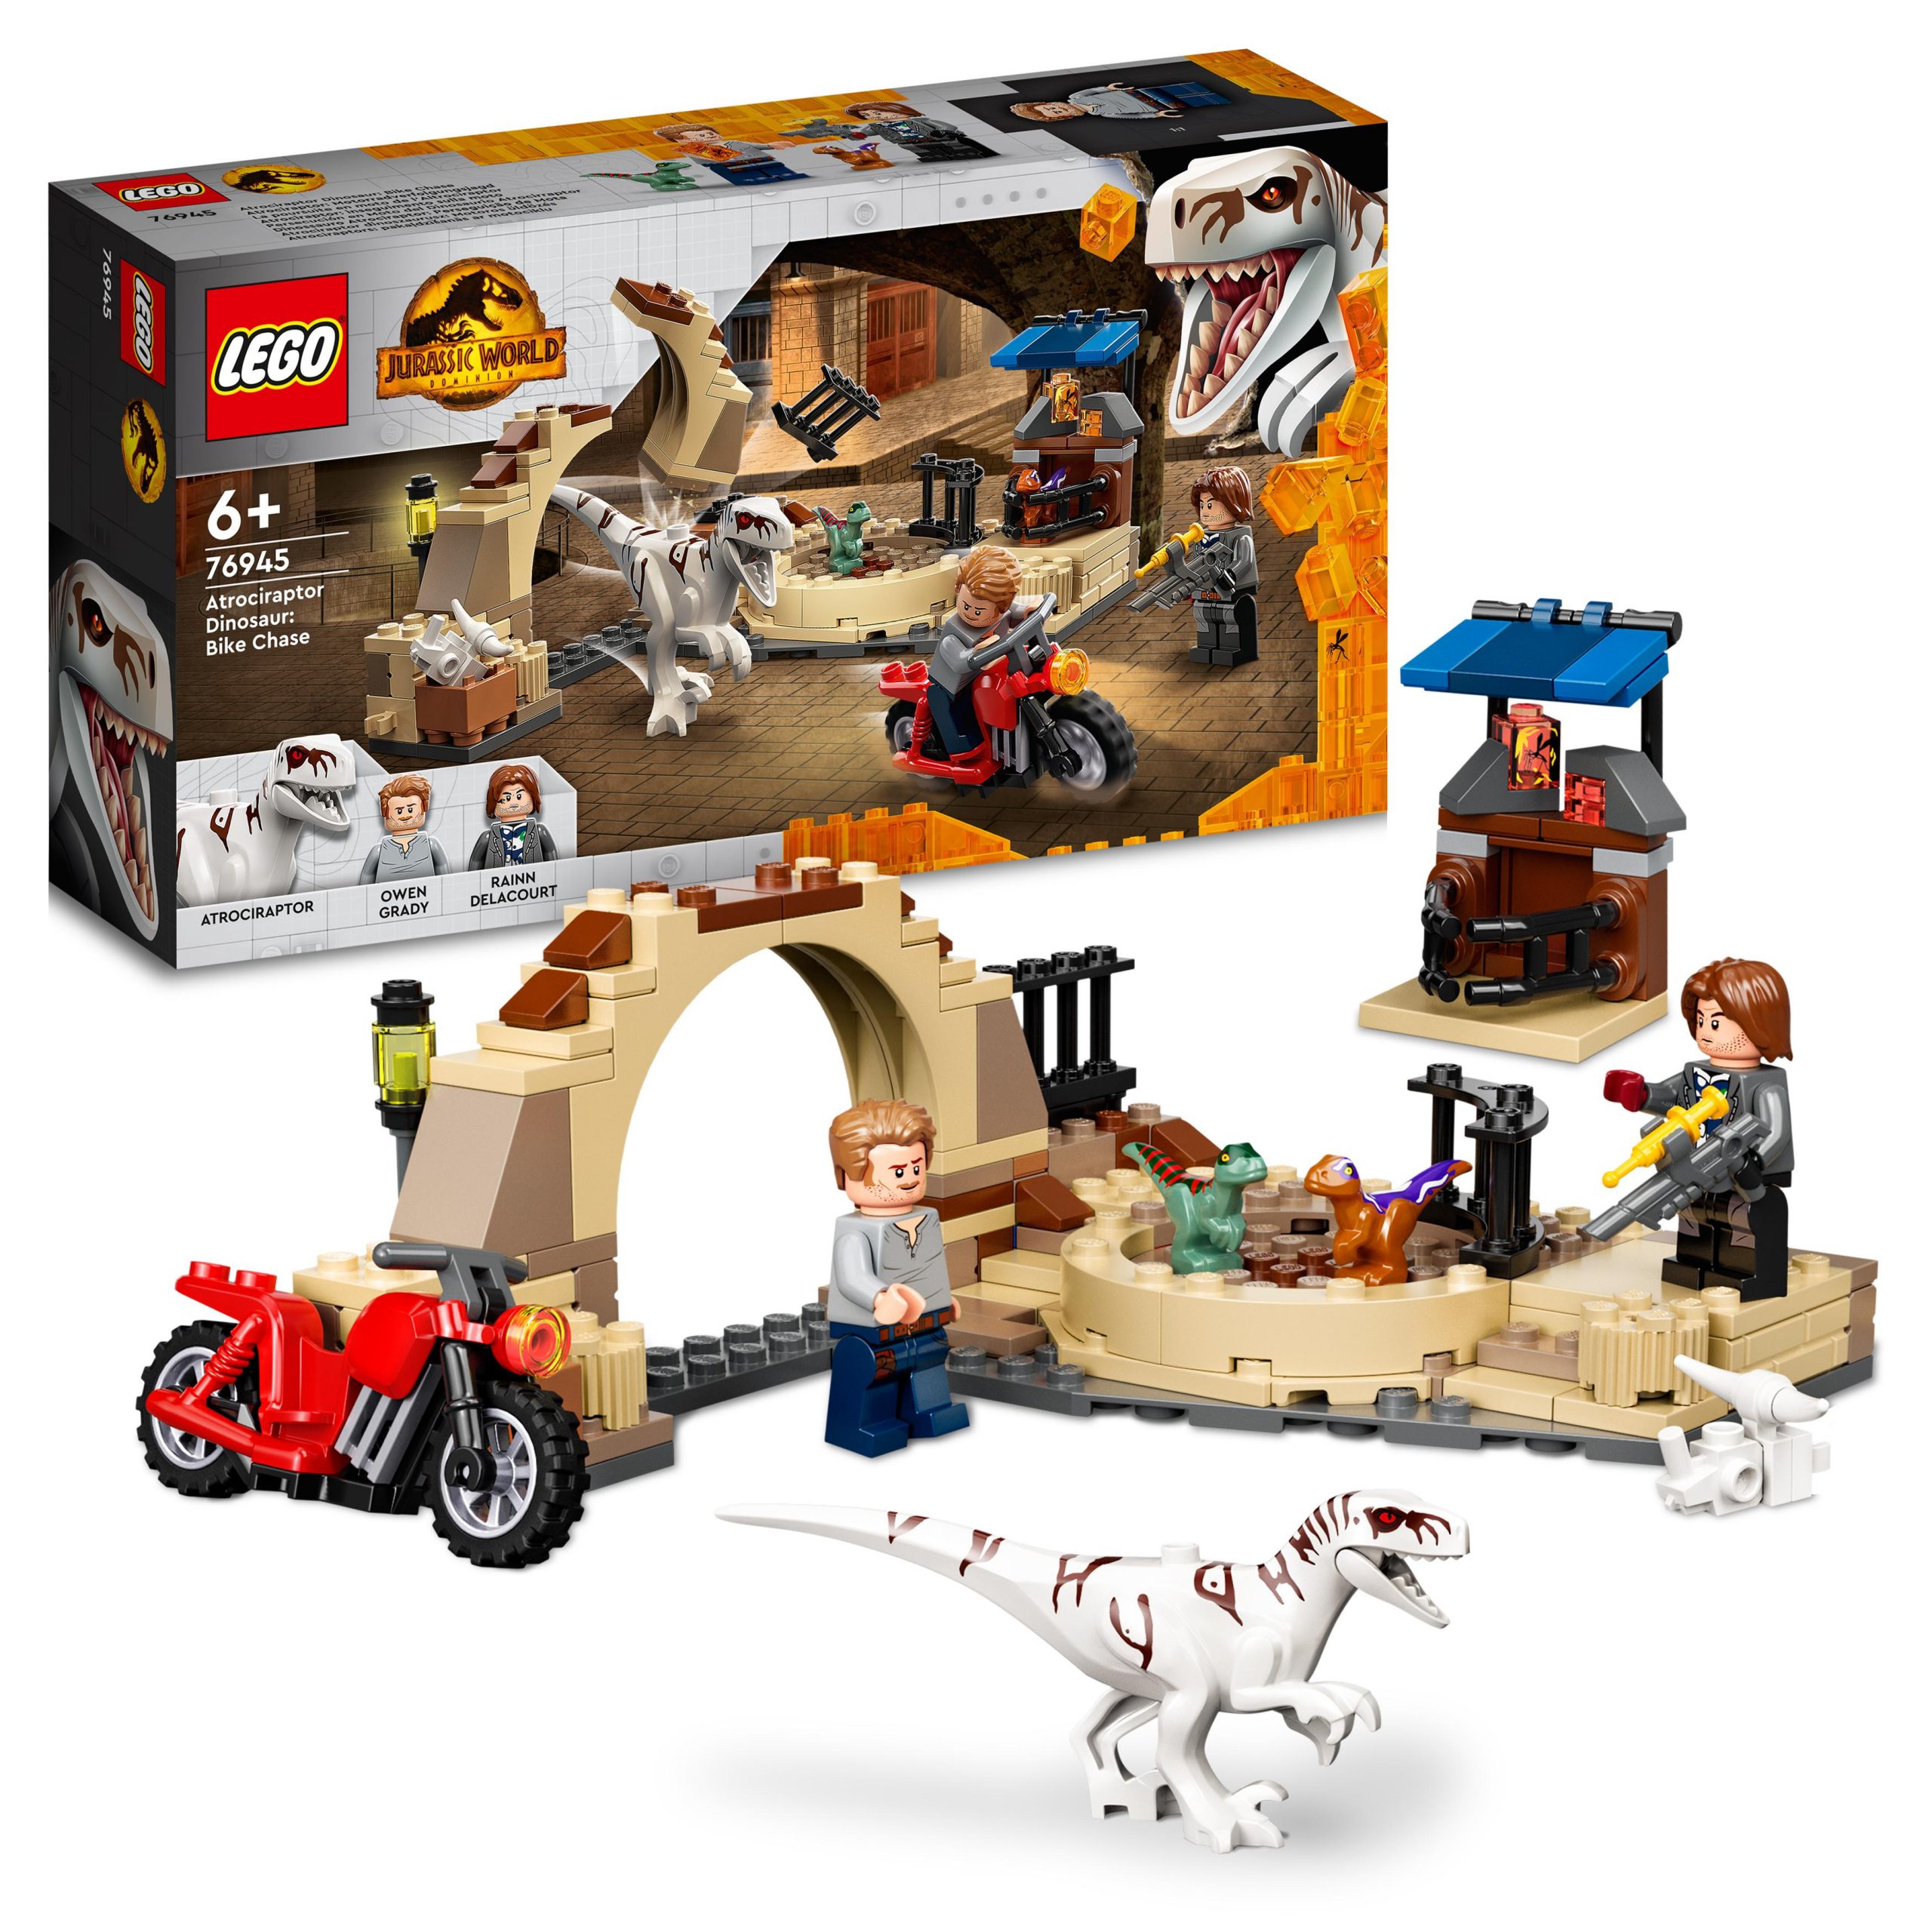 Lego jurassic world 76945 atrociraptor: inseguimento sulla moto, con dinosauro giocattolo, giochi per bambini di 6+ anni - Jurassic World, LEGO JURASSIC WORLD, Lego